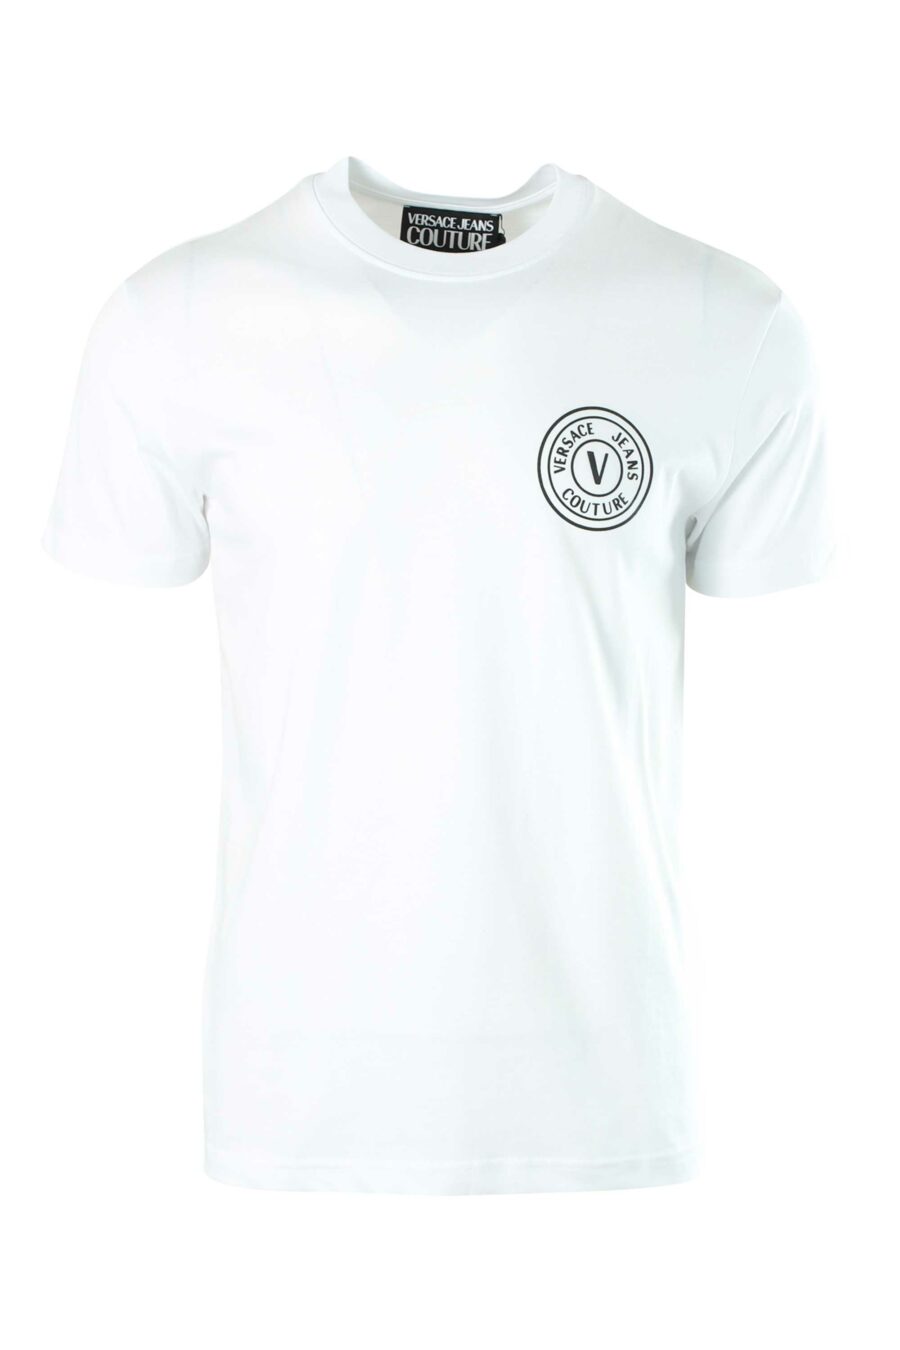 Camiseta blanca con minilogo redondo plateado - 8052019236798